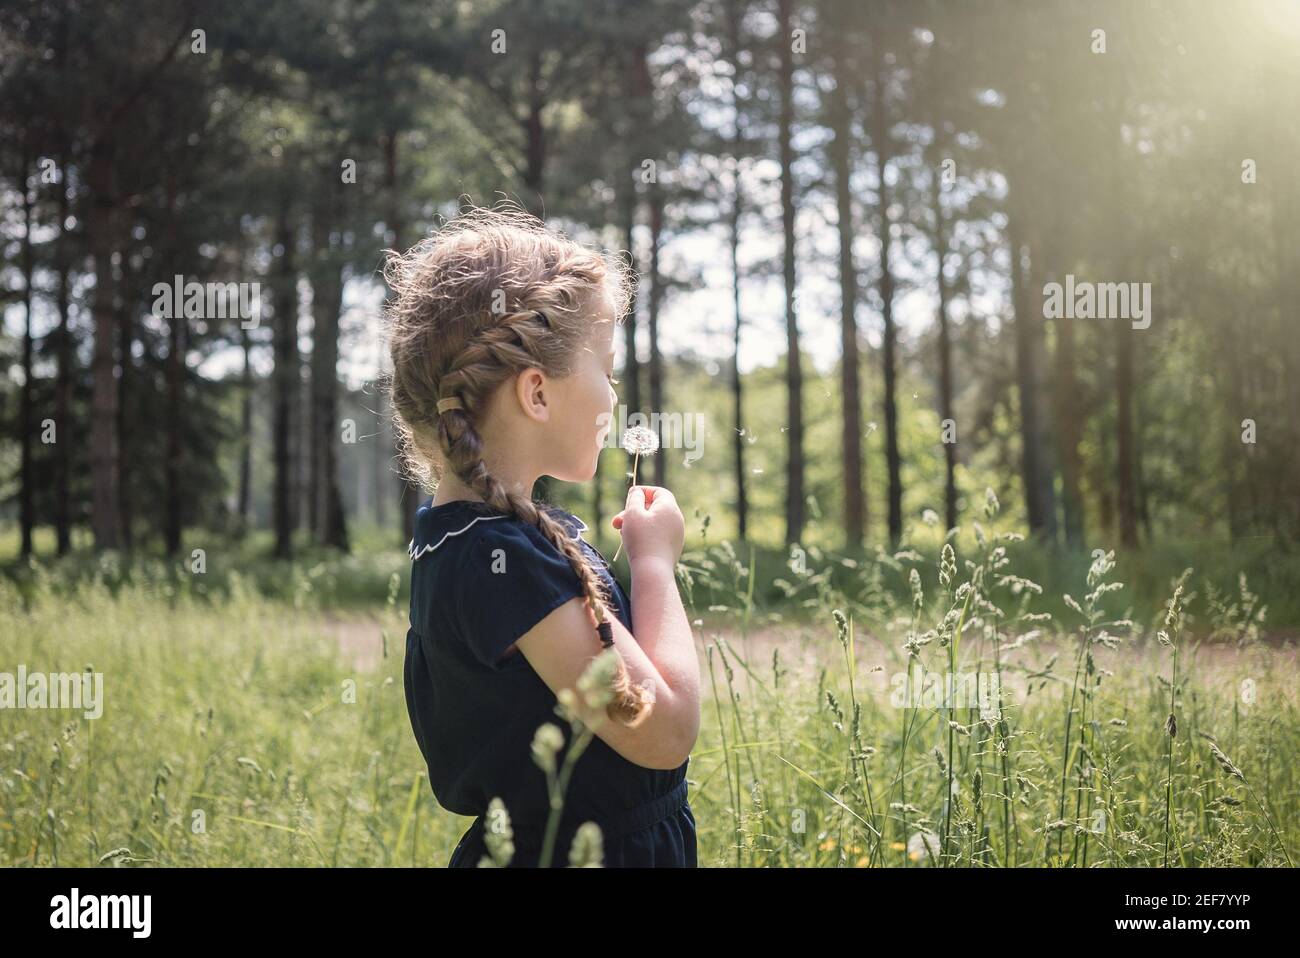 Belle jeune fille explorant la nature avec des cheveux de queue de porc tressés le jour d'été, le soleil tenant et soufflant des graines de fleurs de pissenlit dans de grands arbres en bois Banque D'Images